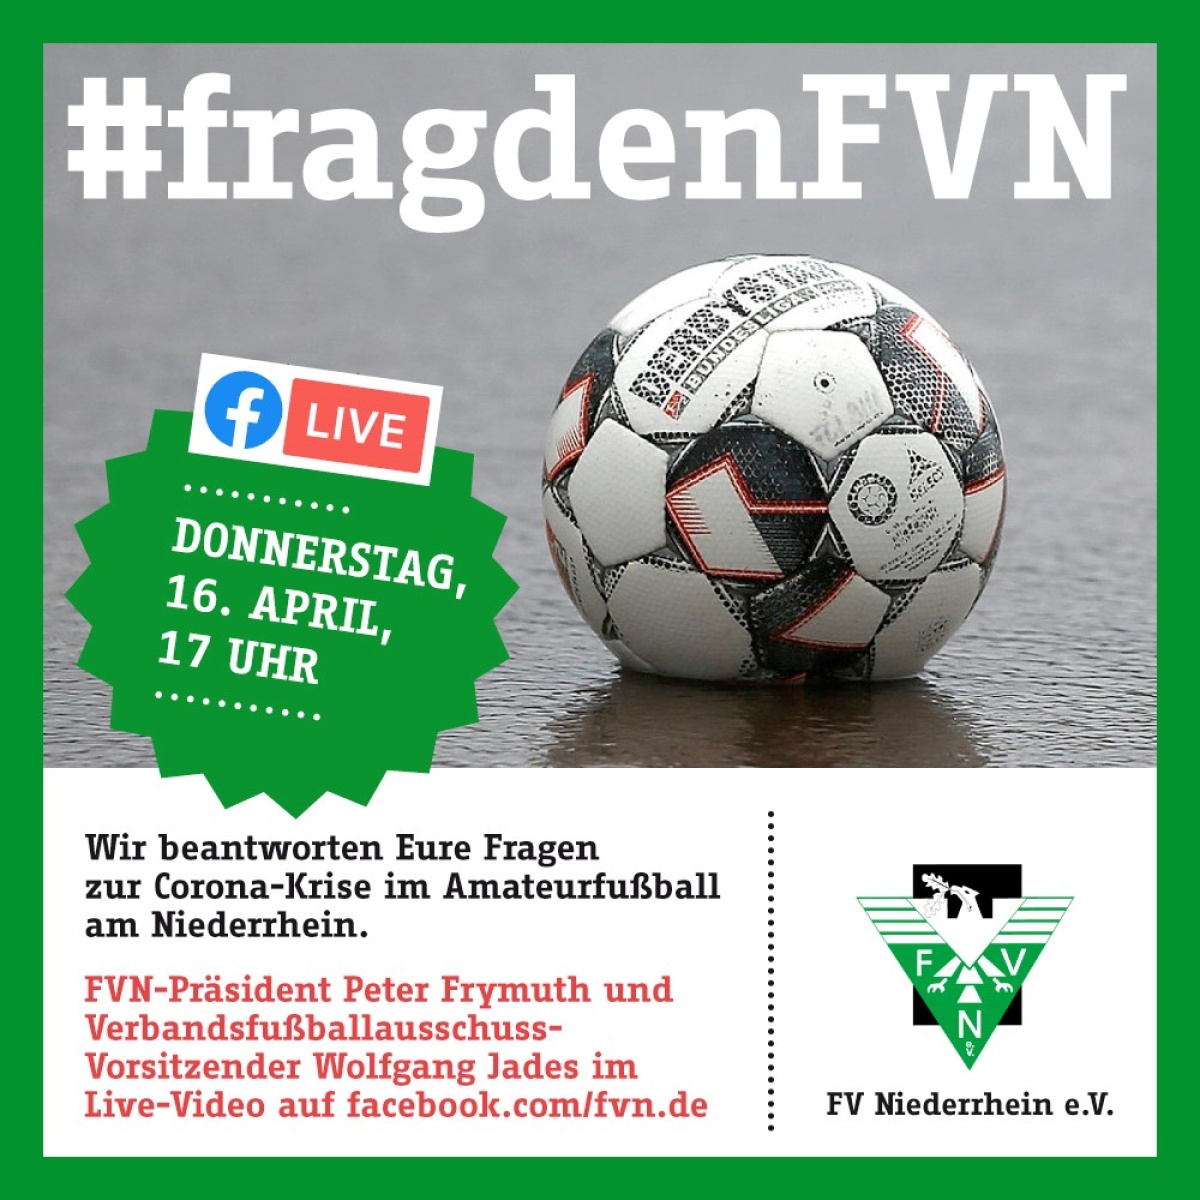 #fragdenFVN: Peter Frymuth und Wolfgang Jades antworten LIVE auf Facebook